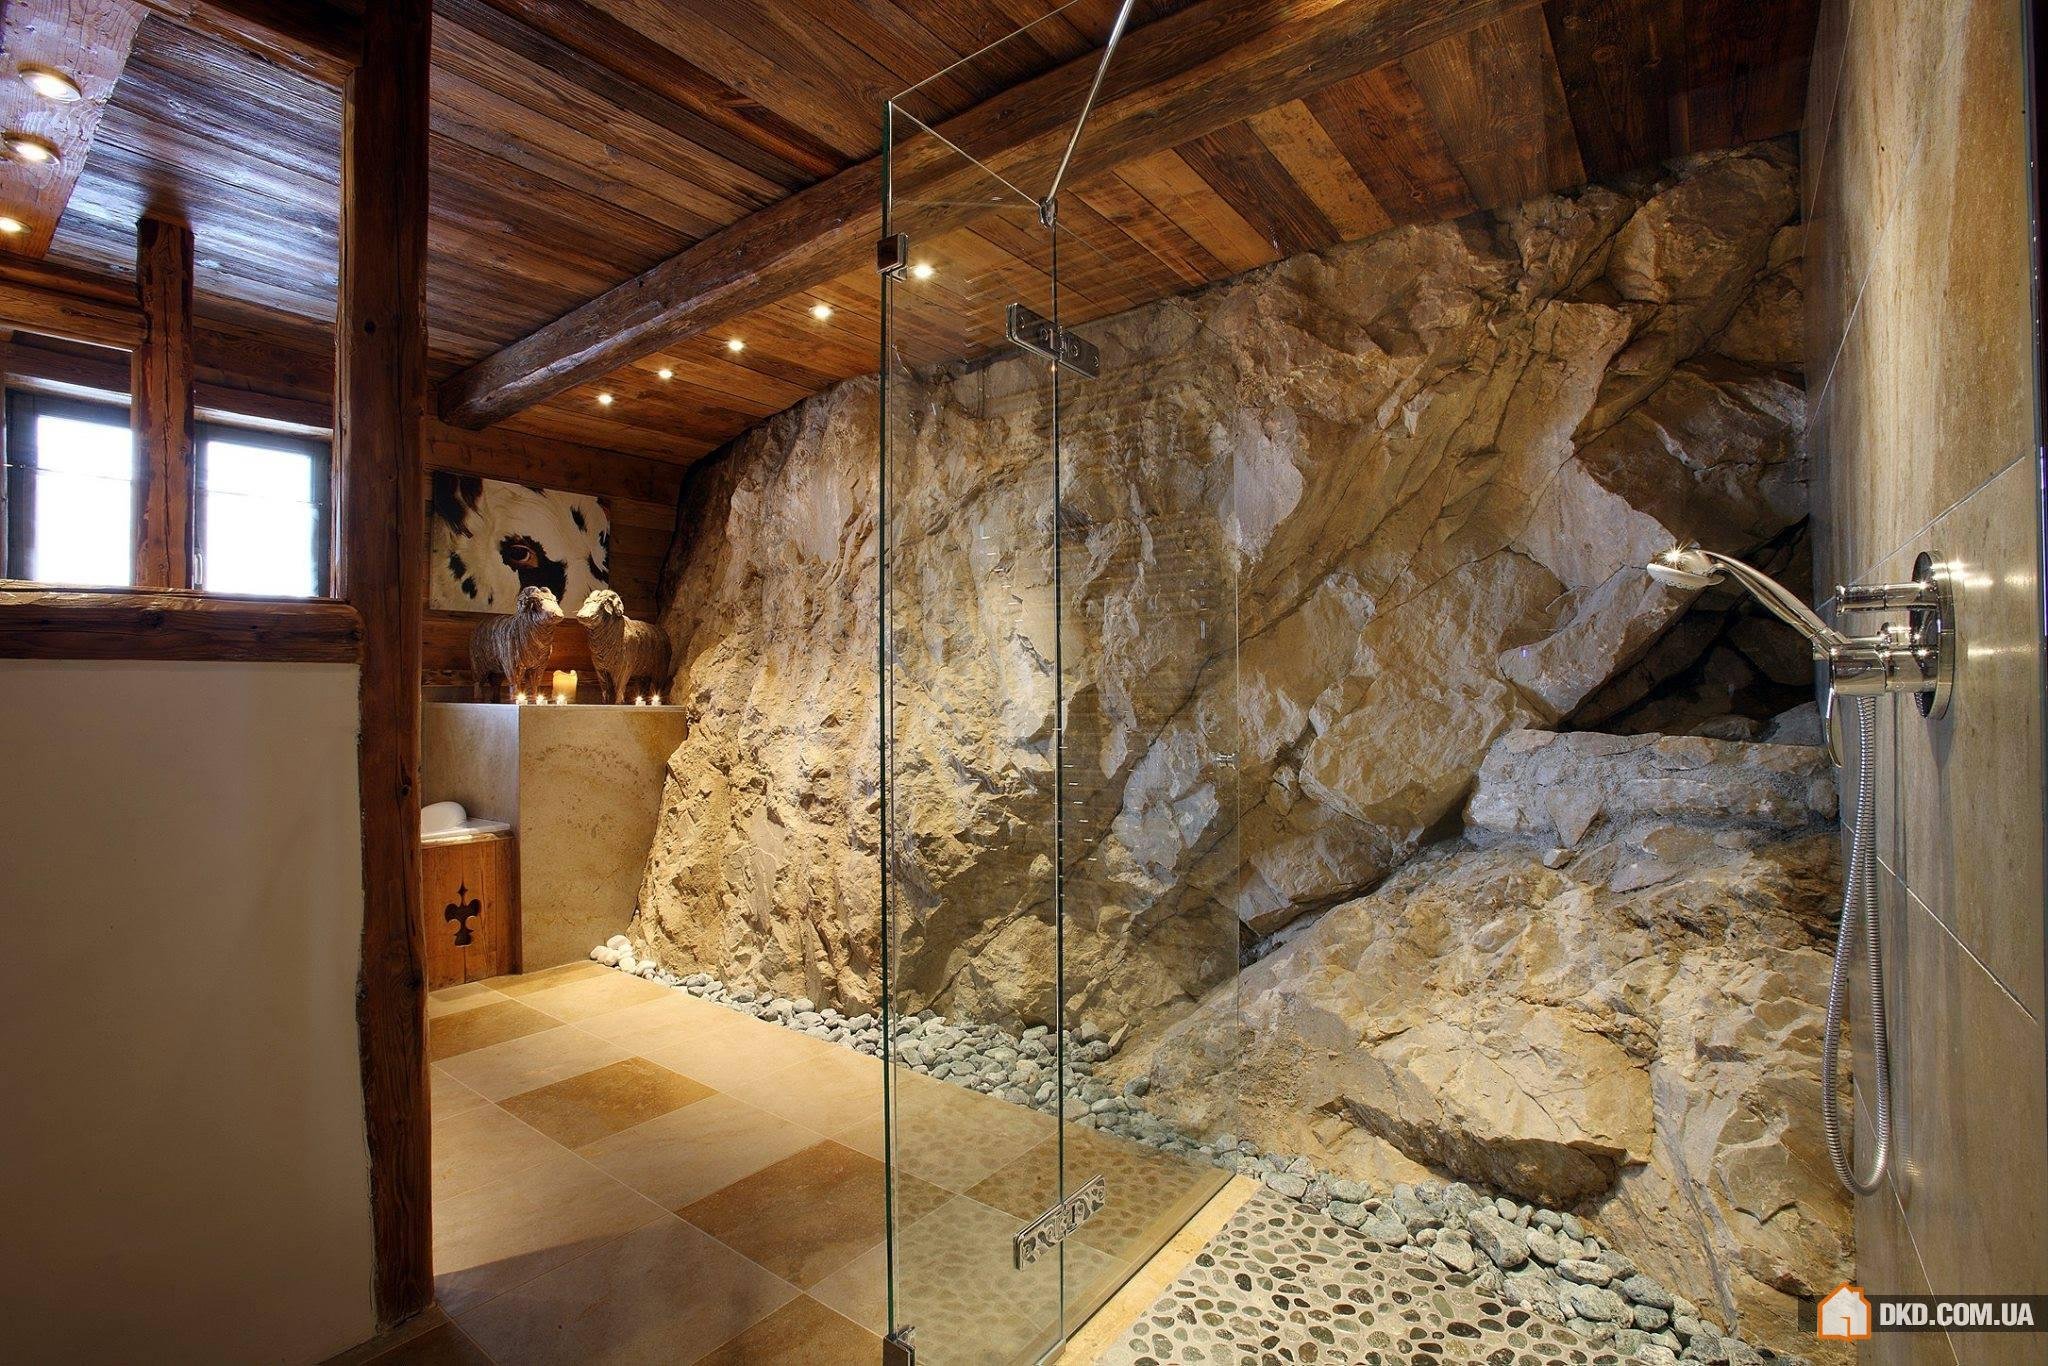 Скала на потолке. Ванная комната в стиле пещеры. Интерьер в стиле пещеры. Скальный камень в интерьере. Стена из валунов.